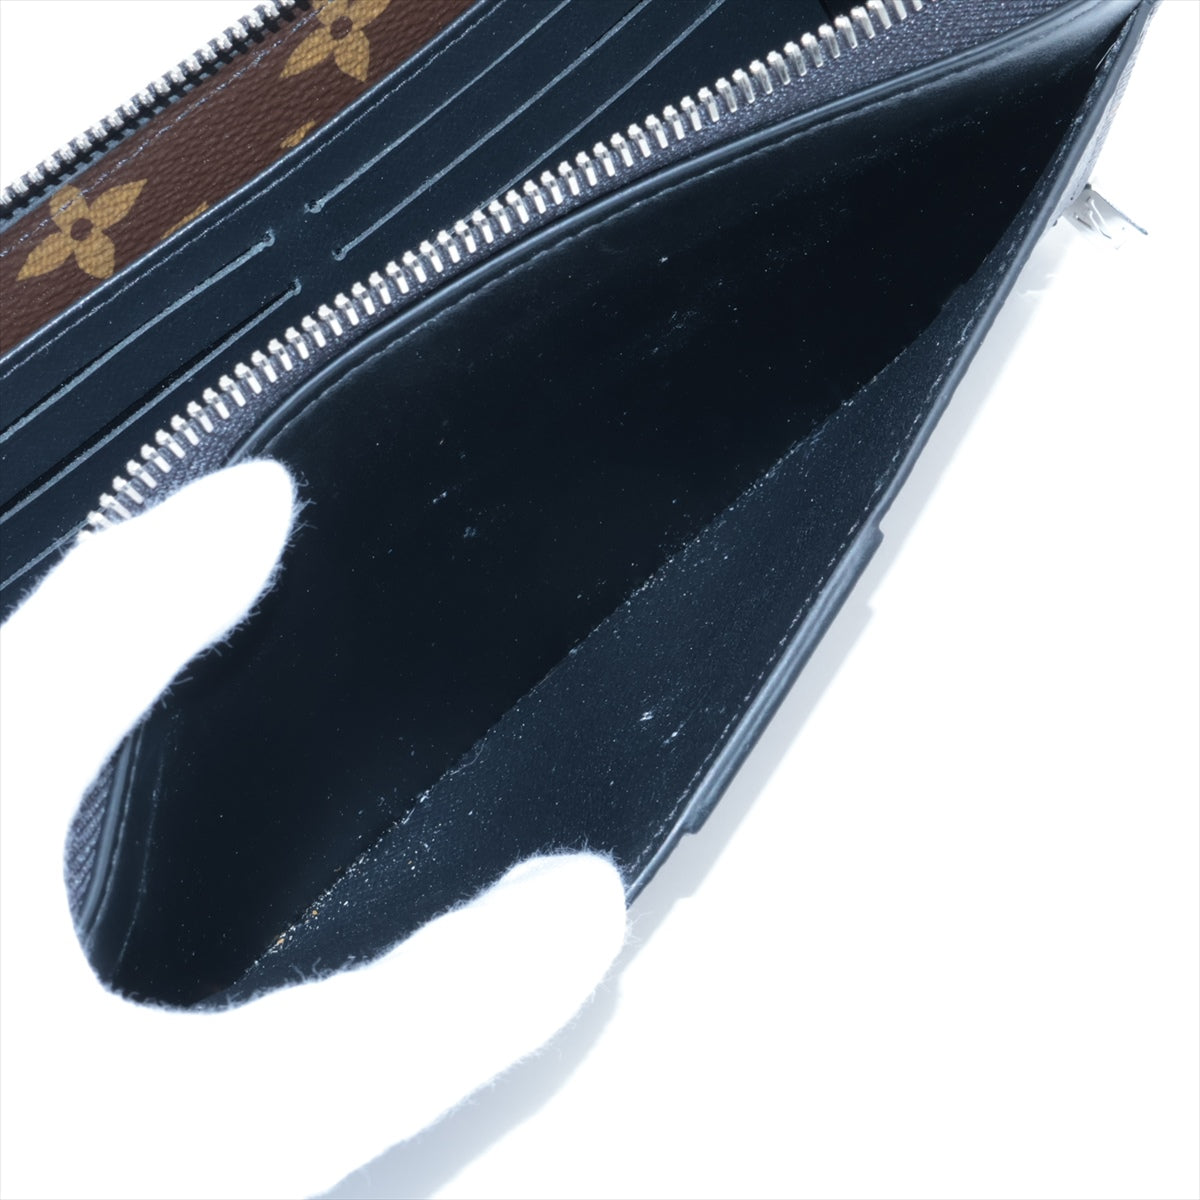 ルイヴィトン モノグラムマカサー ジッピードラゴンヌ M69407 ブラック×ブラウン ラウンドジップウォレット RFID反応あり